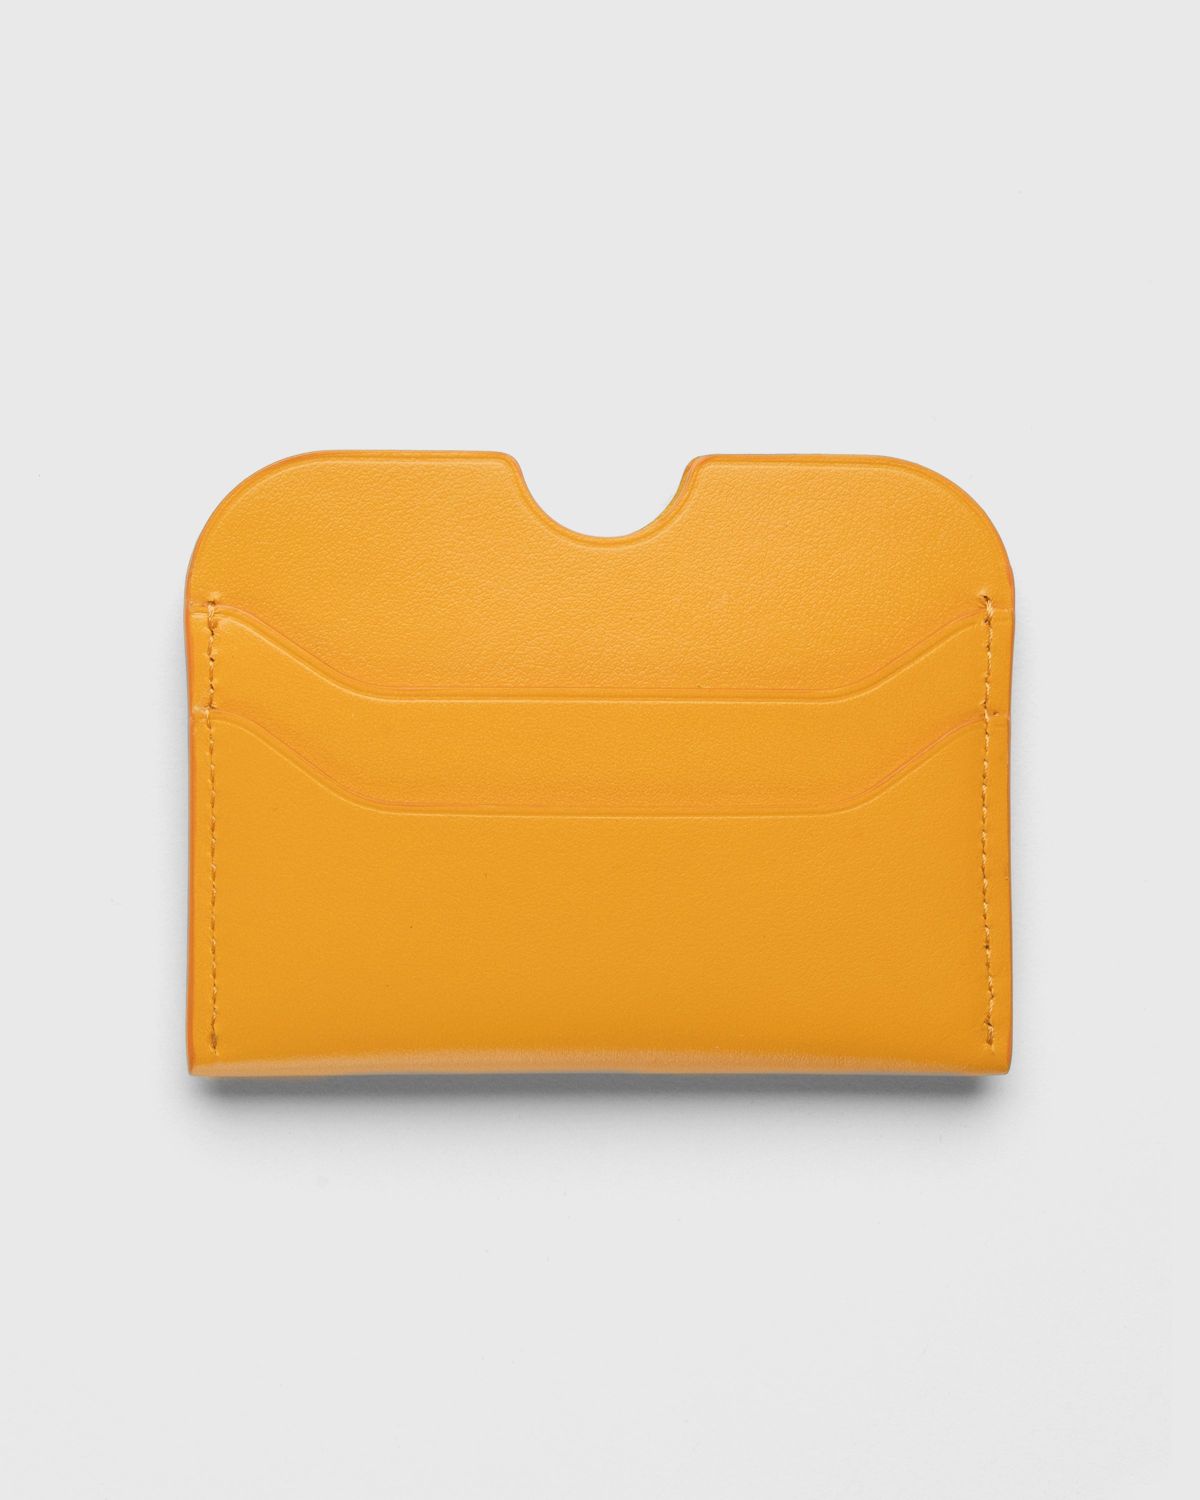 Acne Studios – Leather Card Holder Orange - Wallets - Orange - Image 2